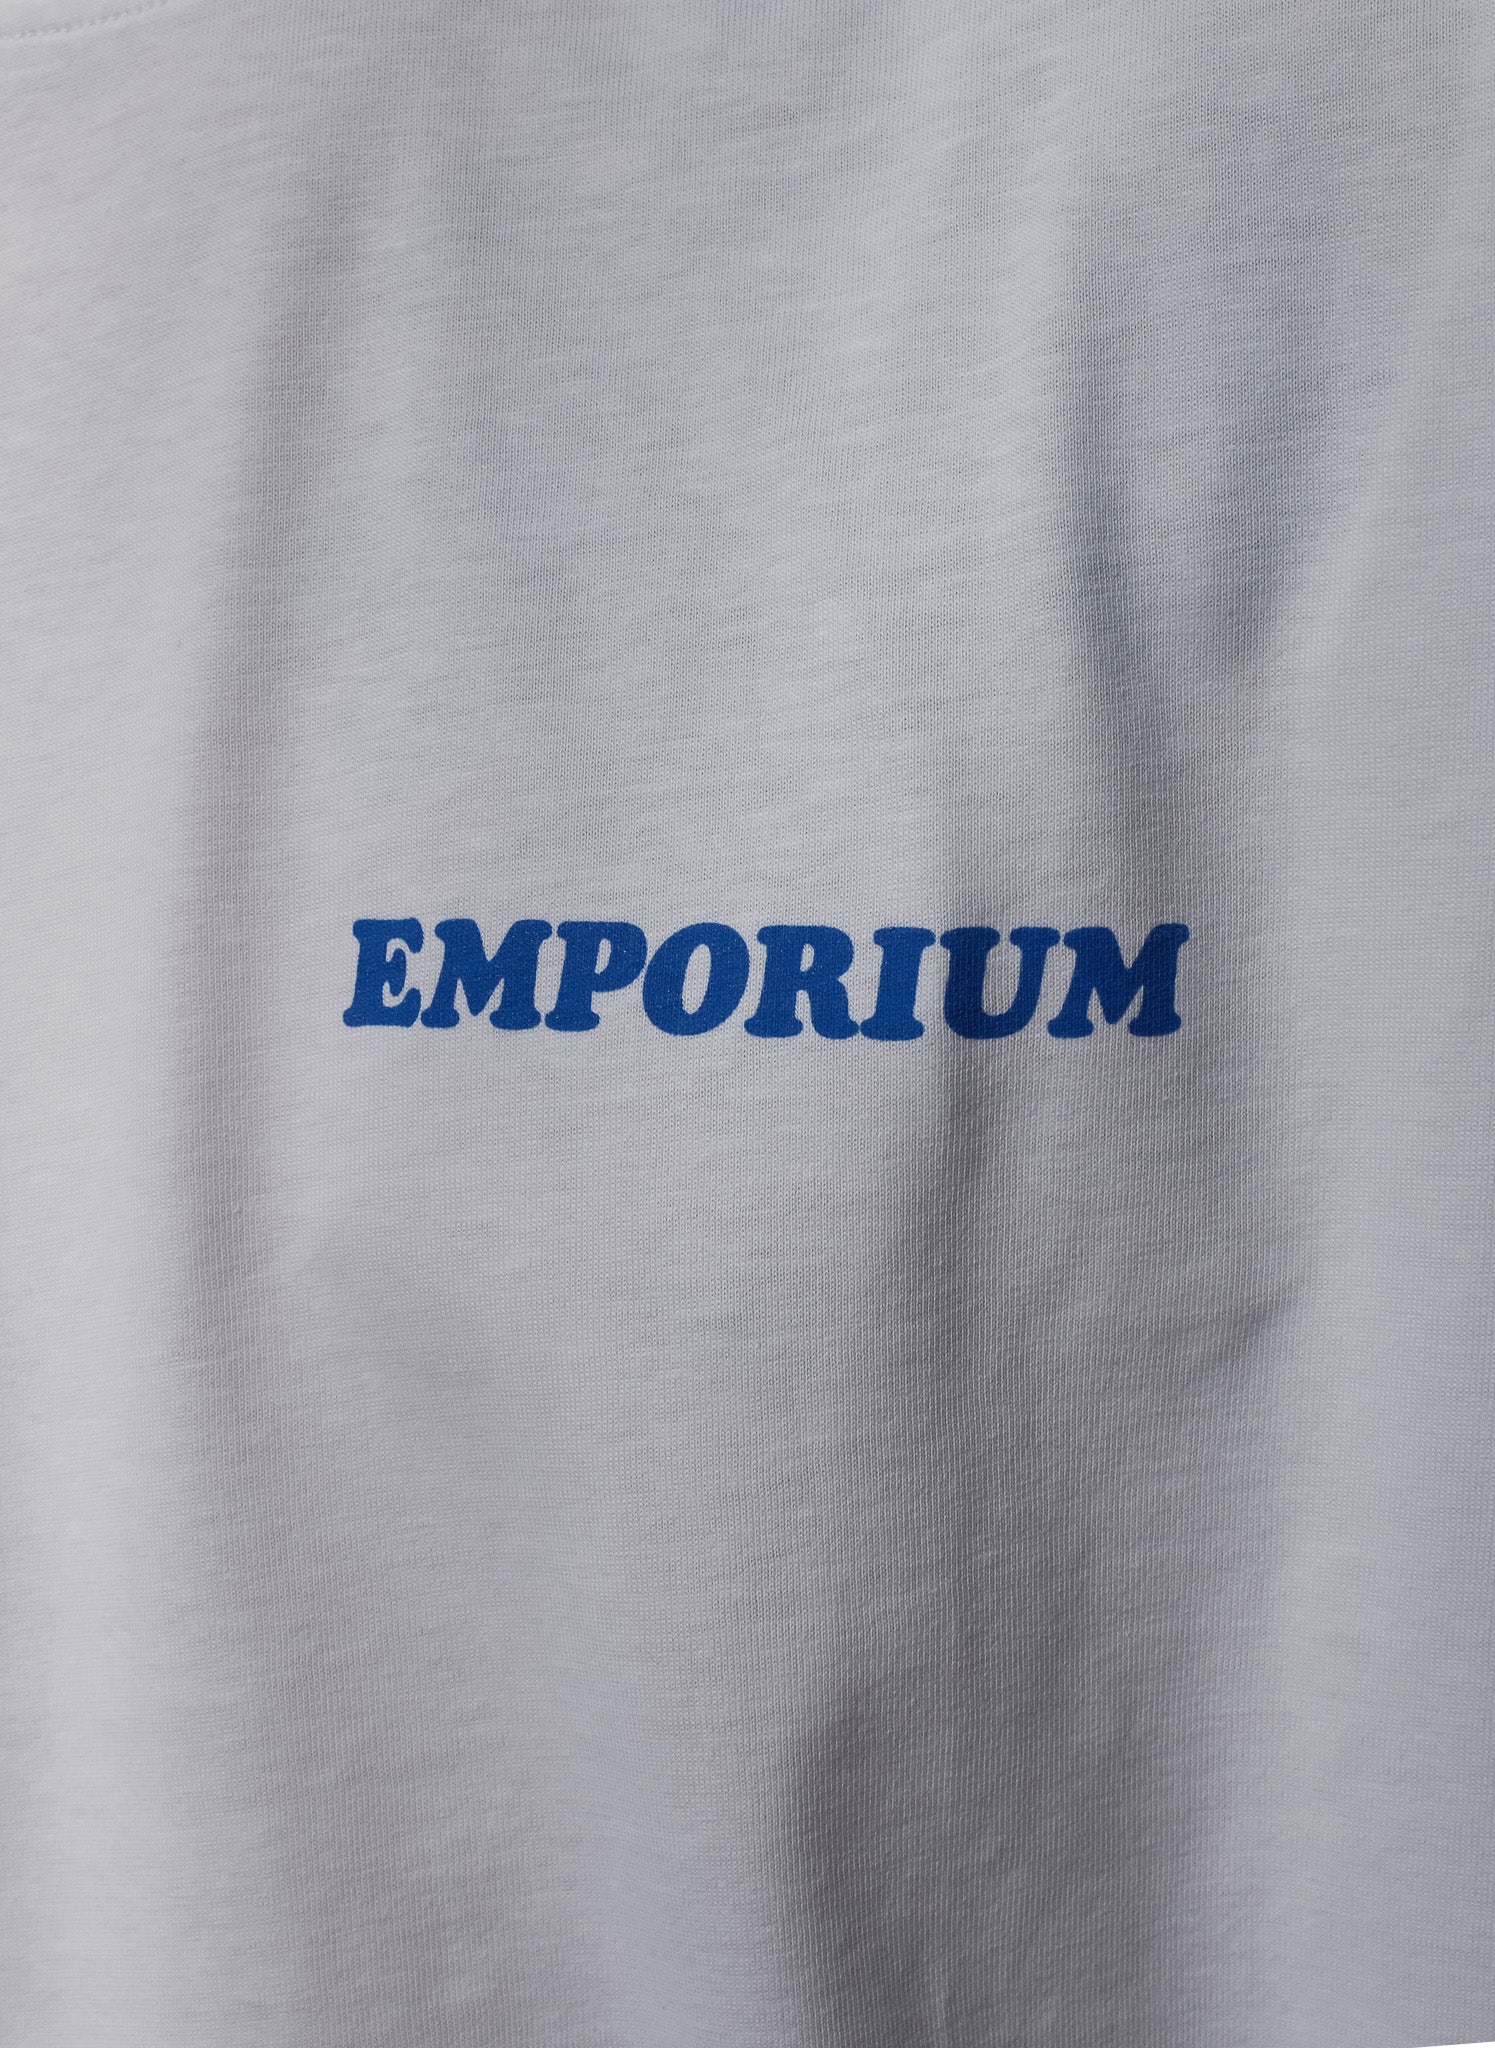 EMPORIUM / LOCAL DEALER LS T-SHIRT WHITE